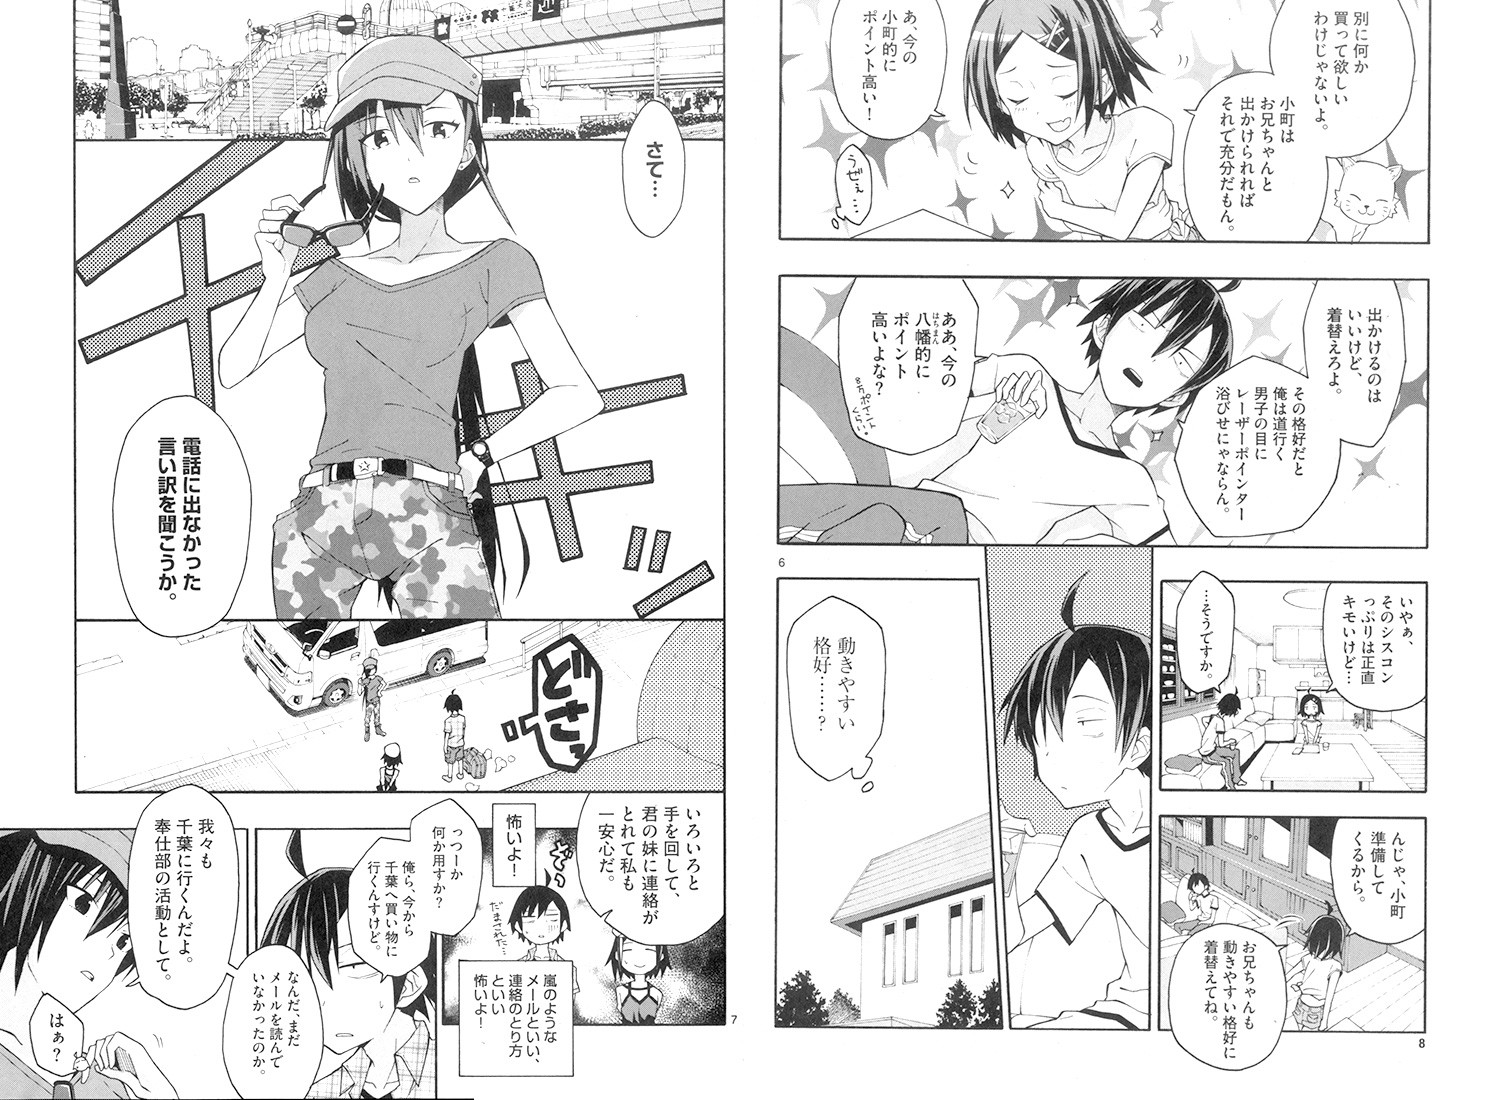 Yahari Ore no Seishun Rabukome wa Machigatte Iru. @ Comic - Chapter 24 - Page 5